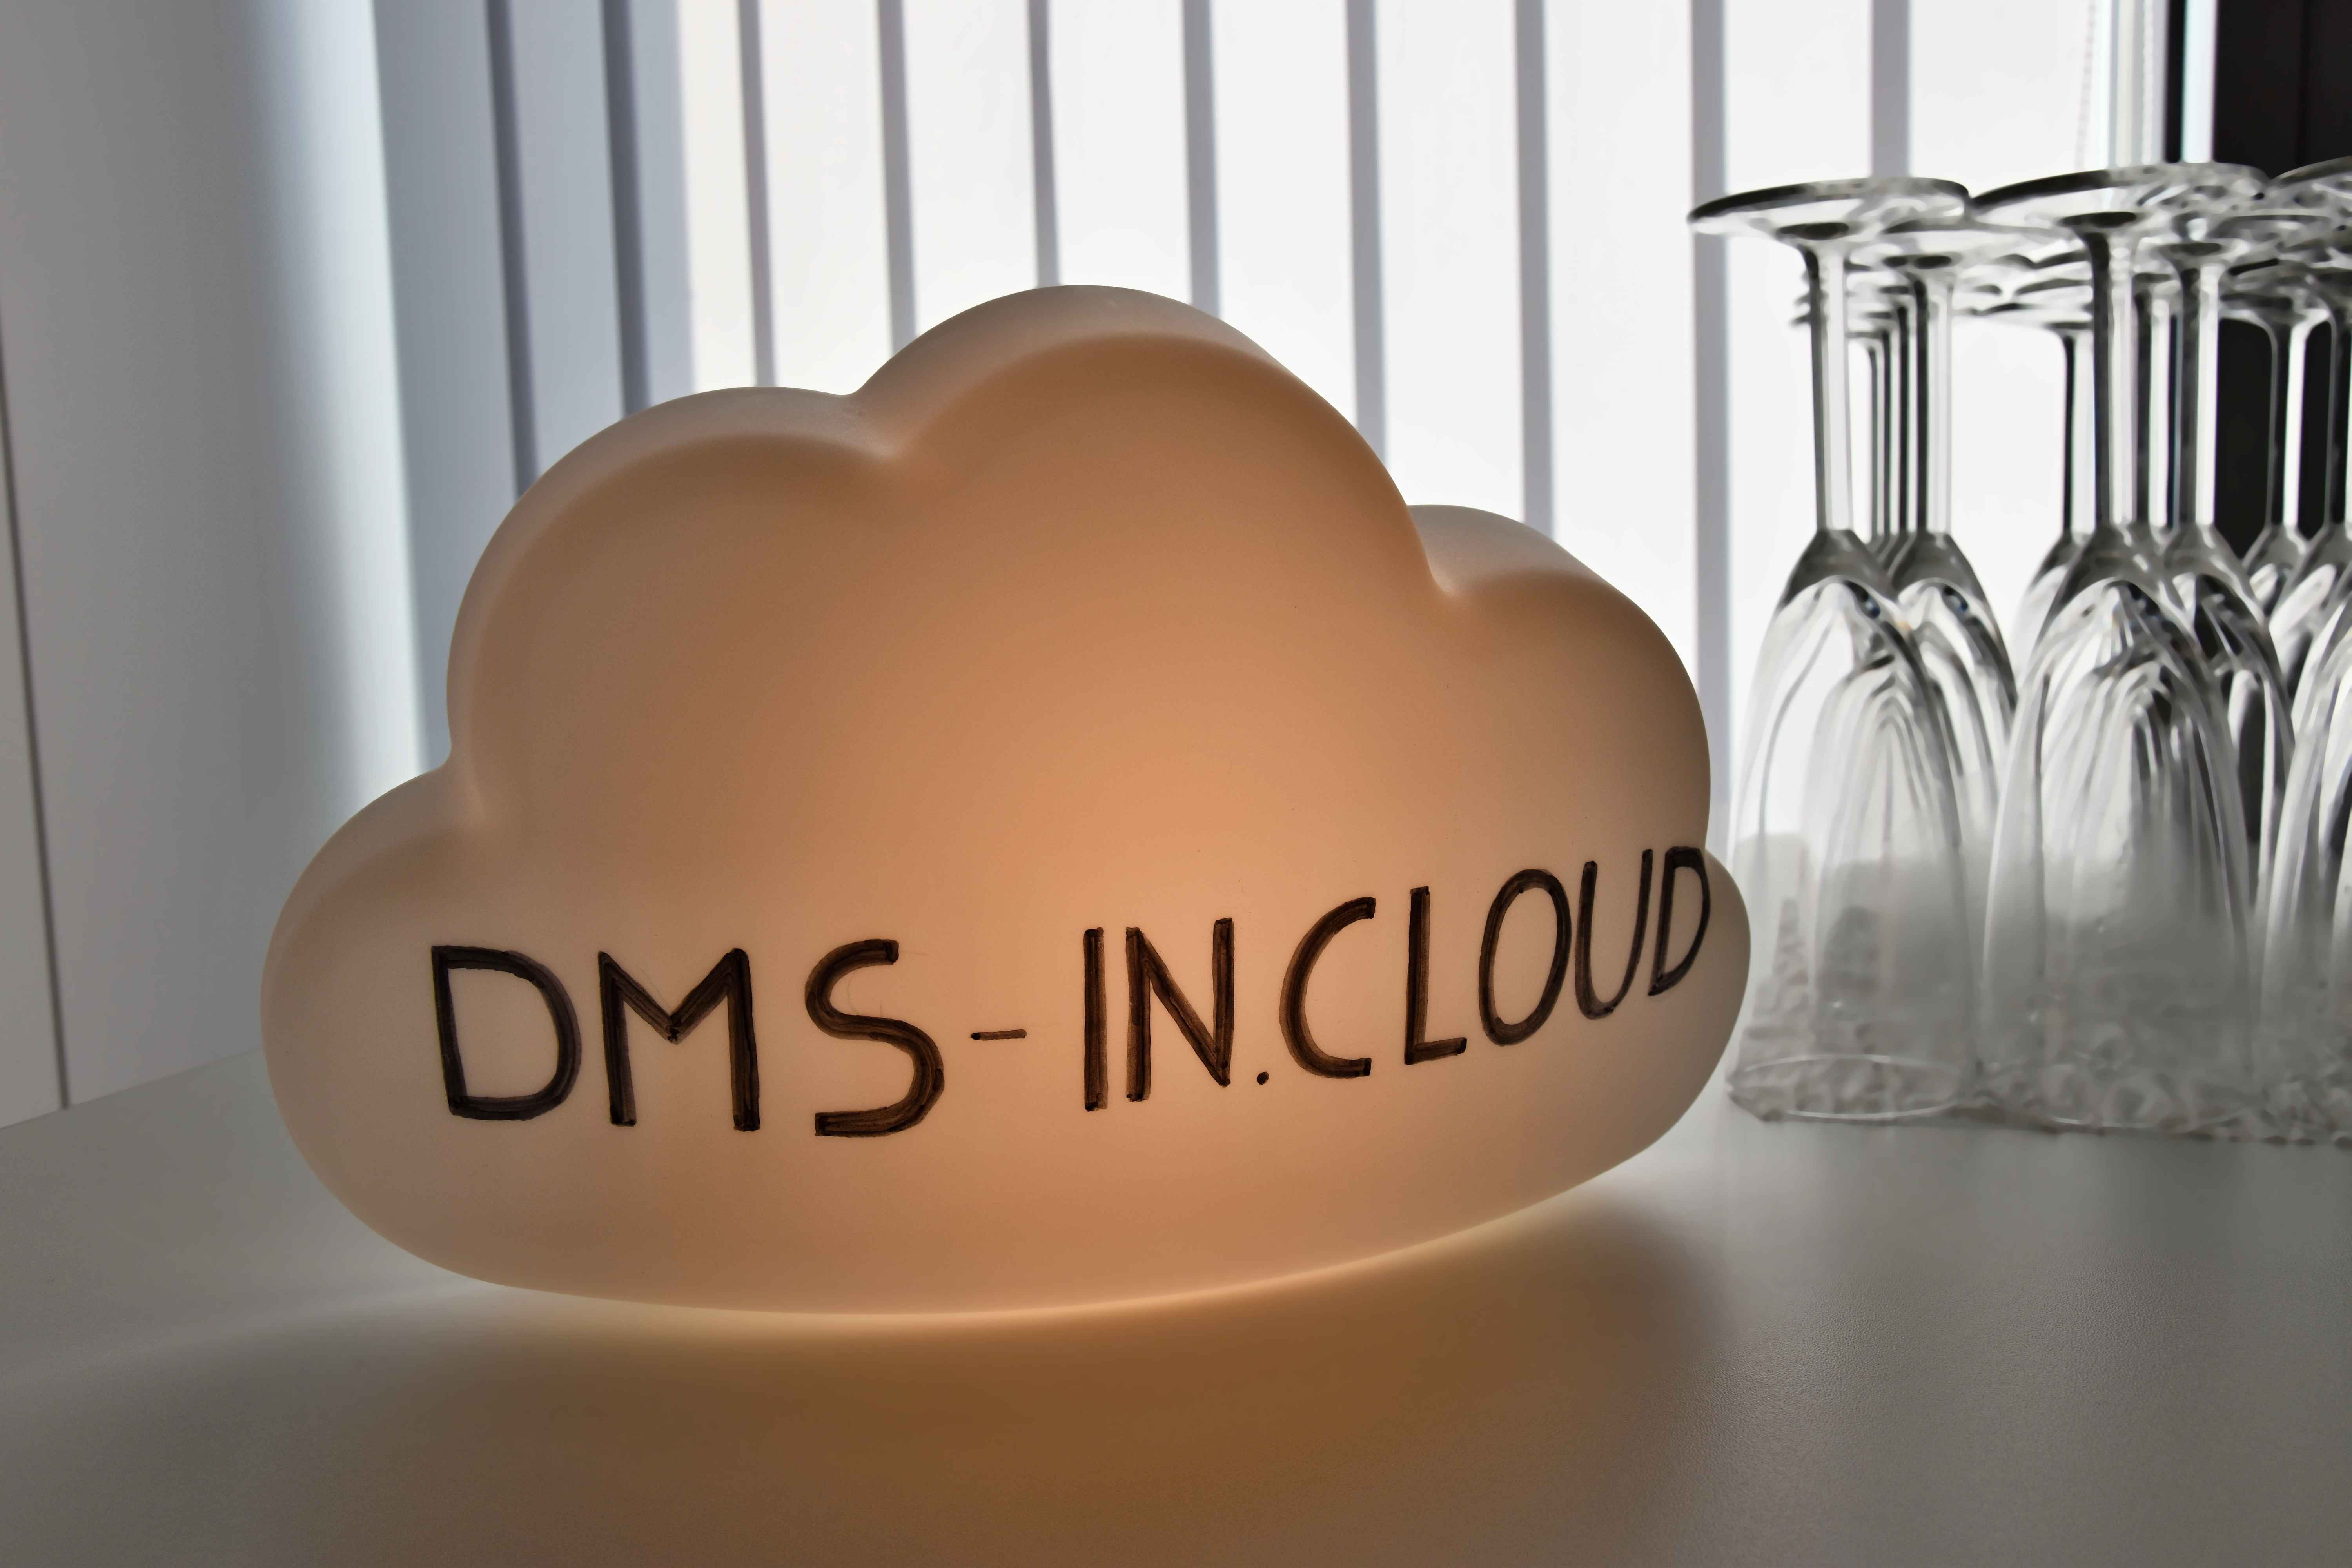 1 Akce DMS in Cloud Lužice 2019 (21)